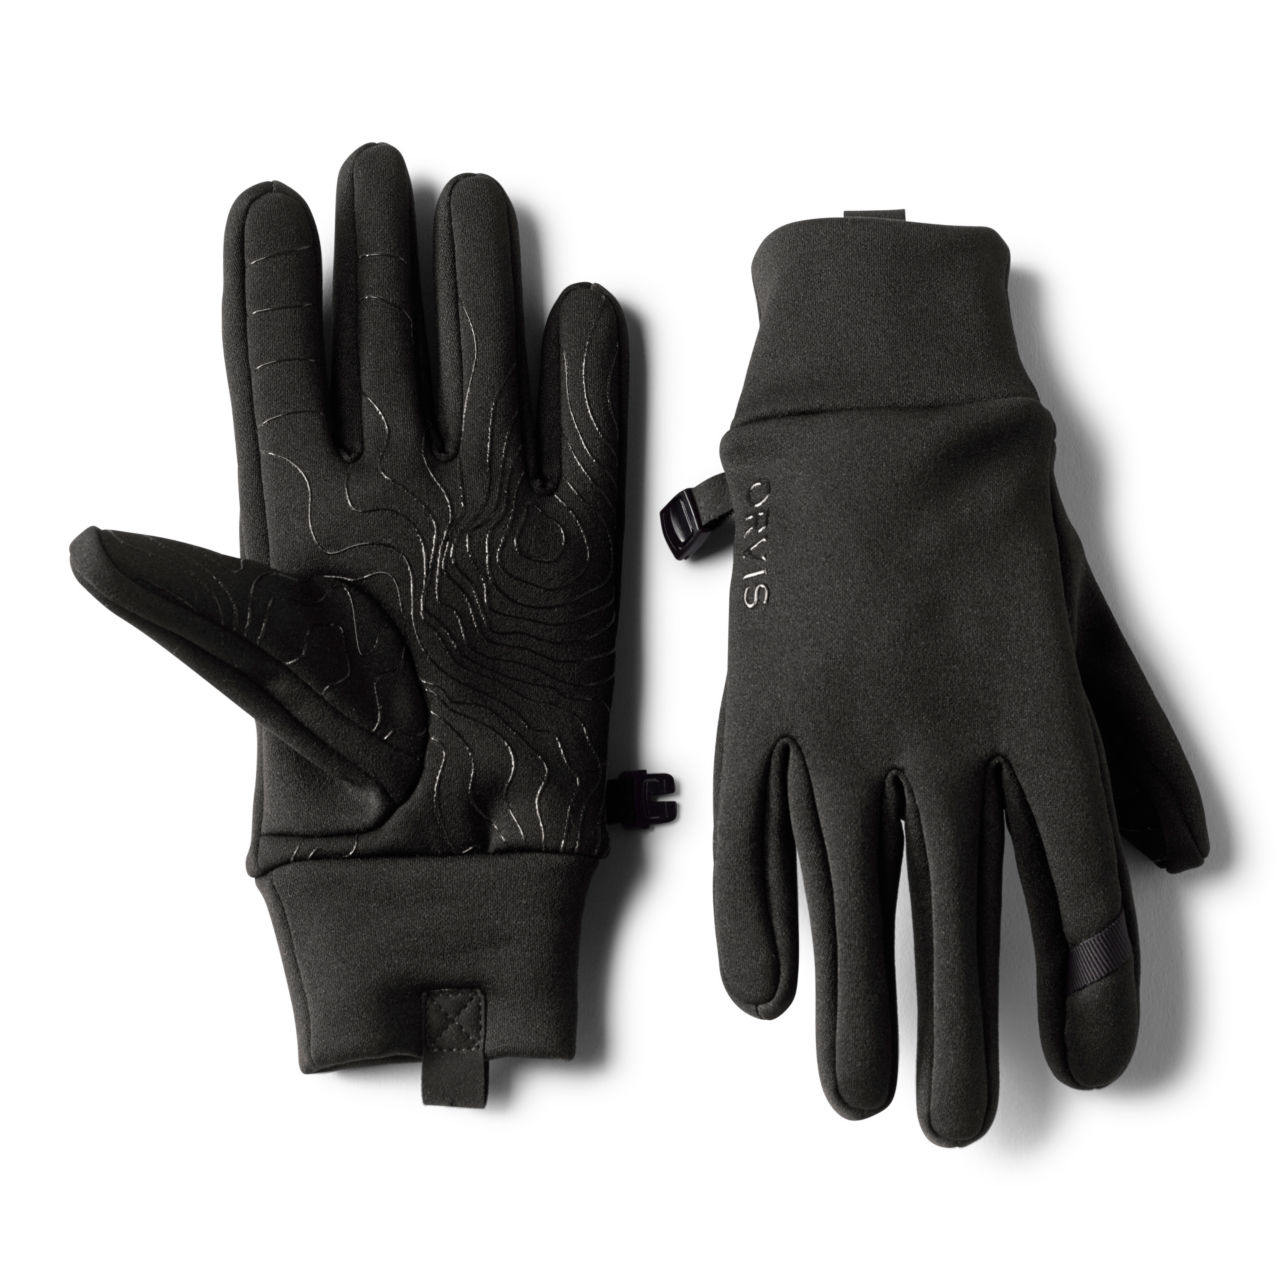 All-Purpose Liner Gloves - BLACK image number 0